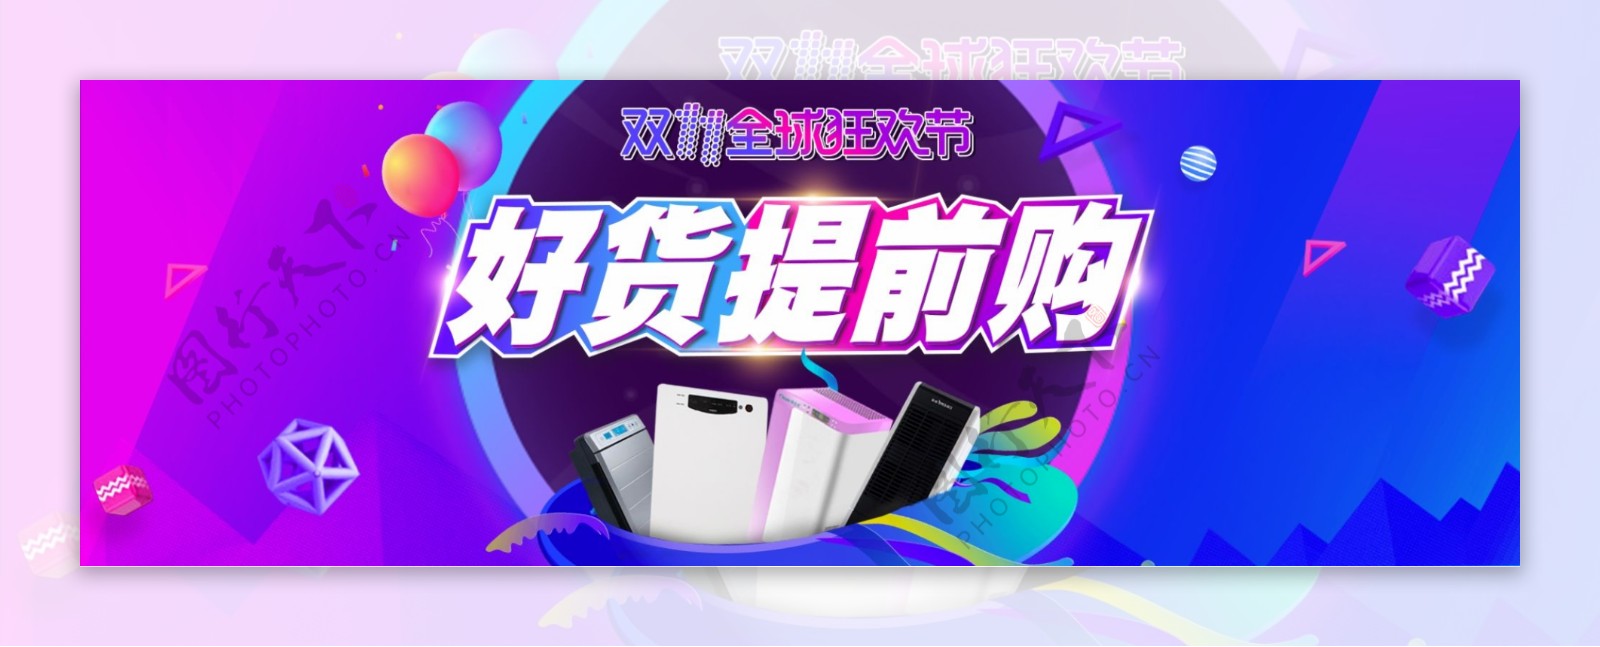 蓝紫色酷炫双十一电器天猫电商促销海报banner双11